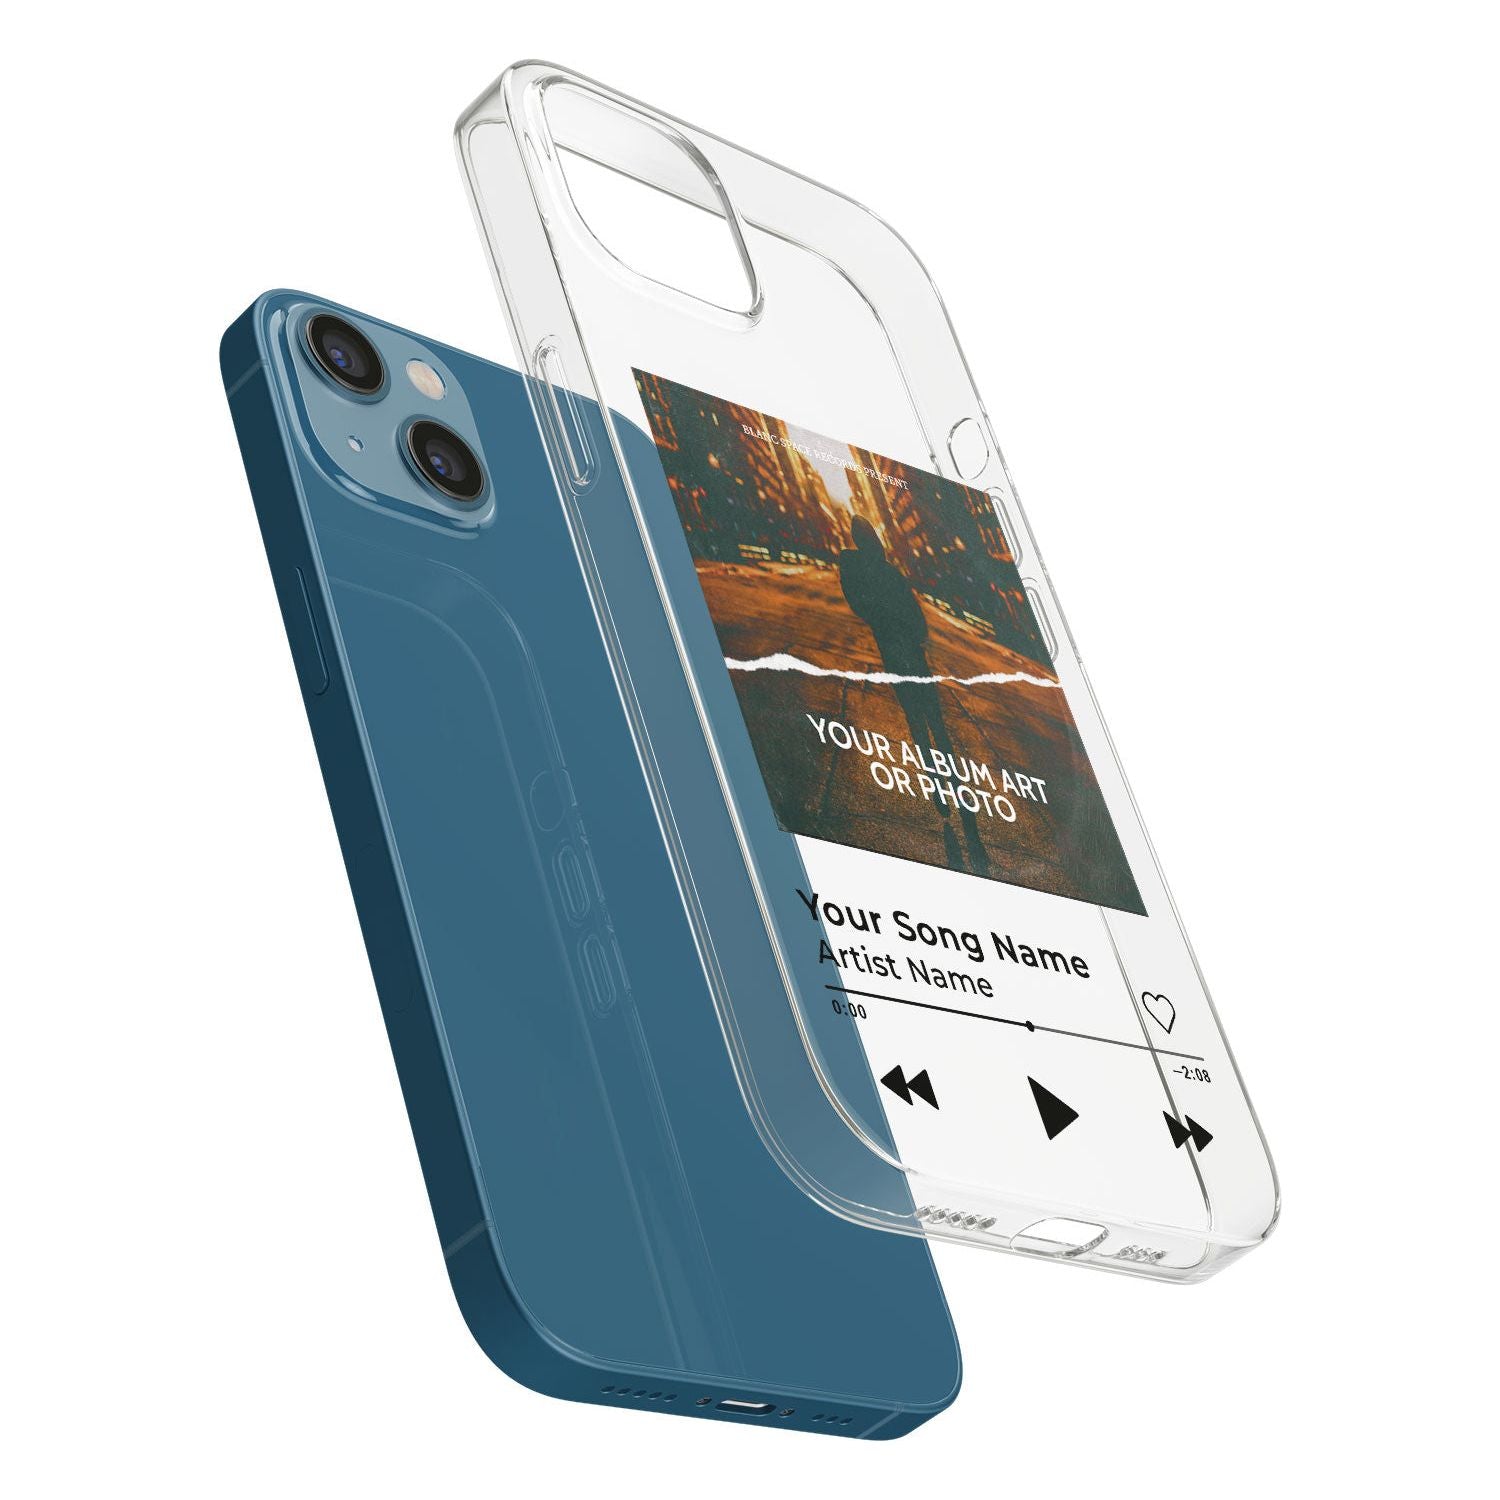 Personalised Album Art Phone Case for iPhone 13 Mini